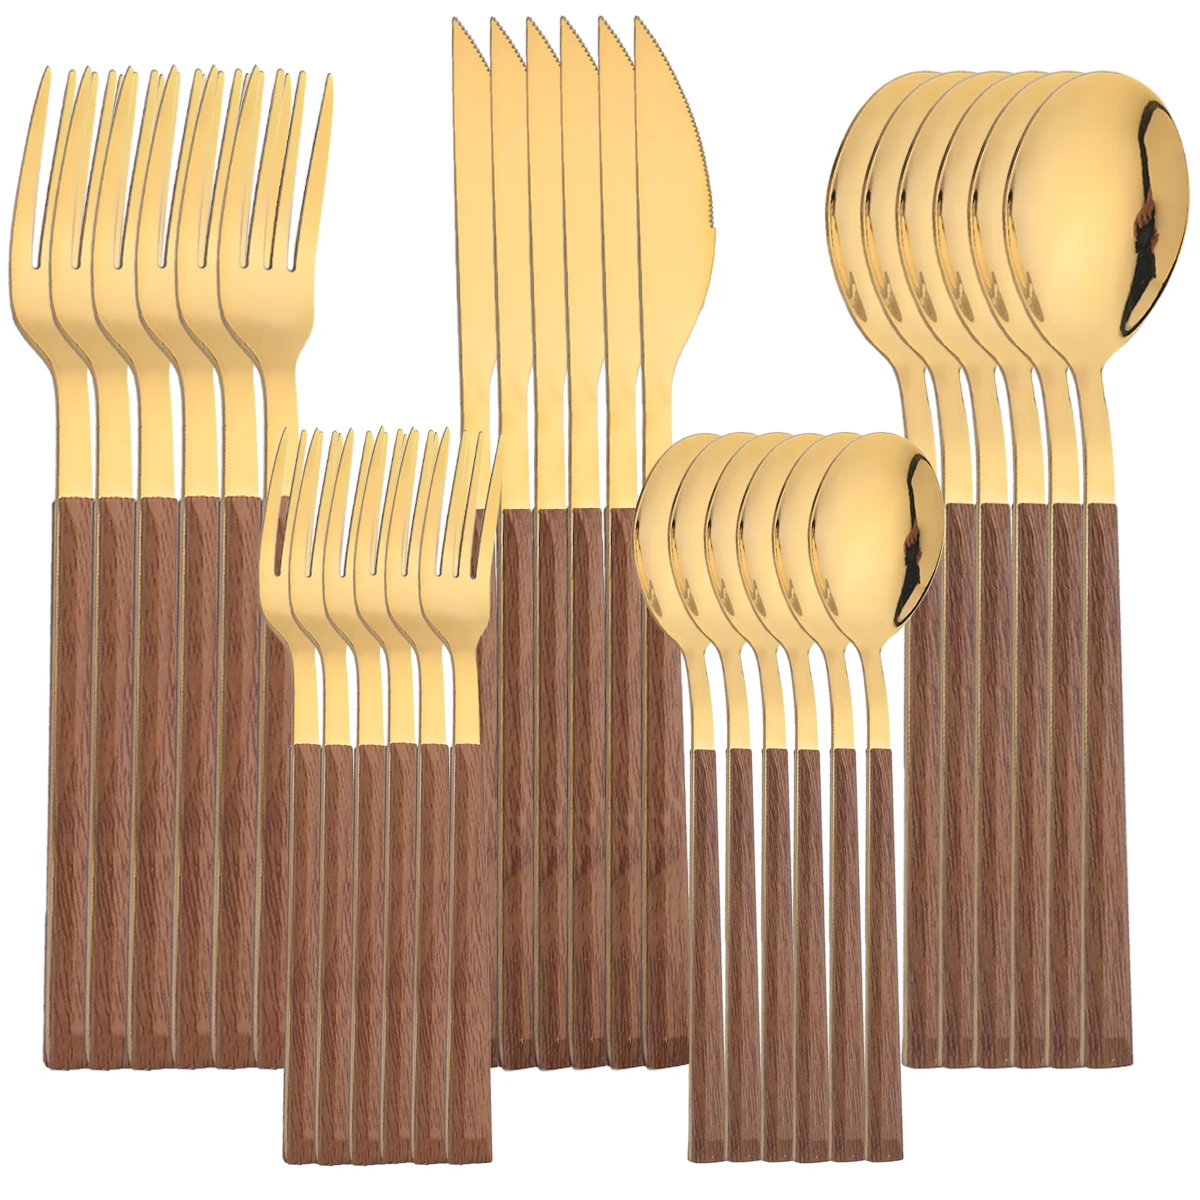 

30Pcs Cutlery Sets Stainless Steel Imitation Wooden Handle Dinnerware Tableware Knife Fork Spoons Silverware Western Flatware